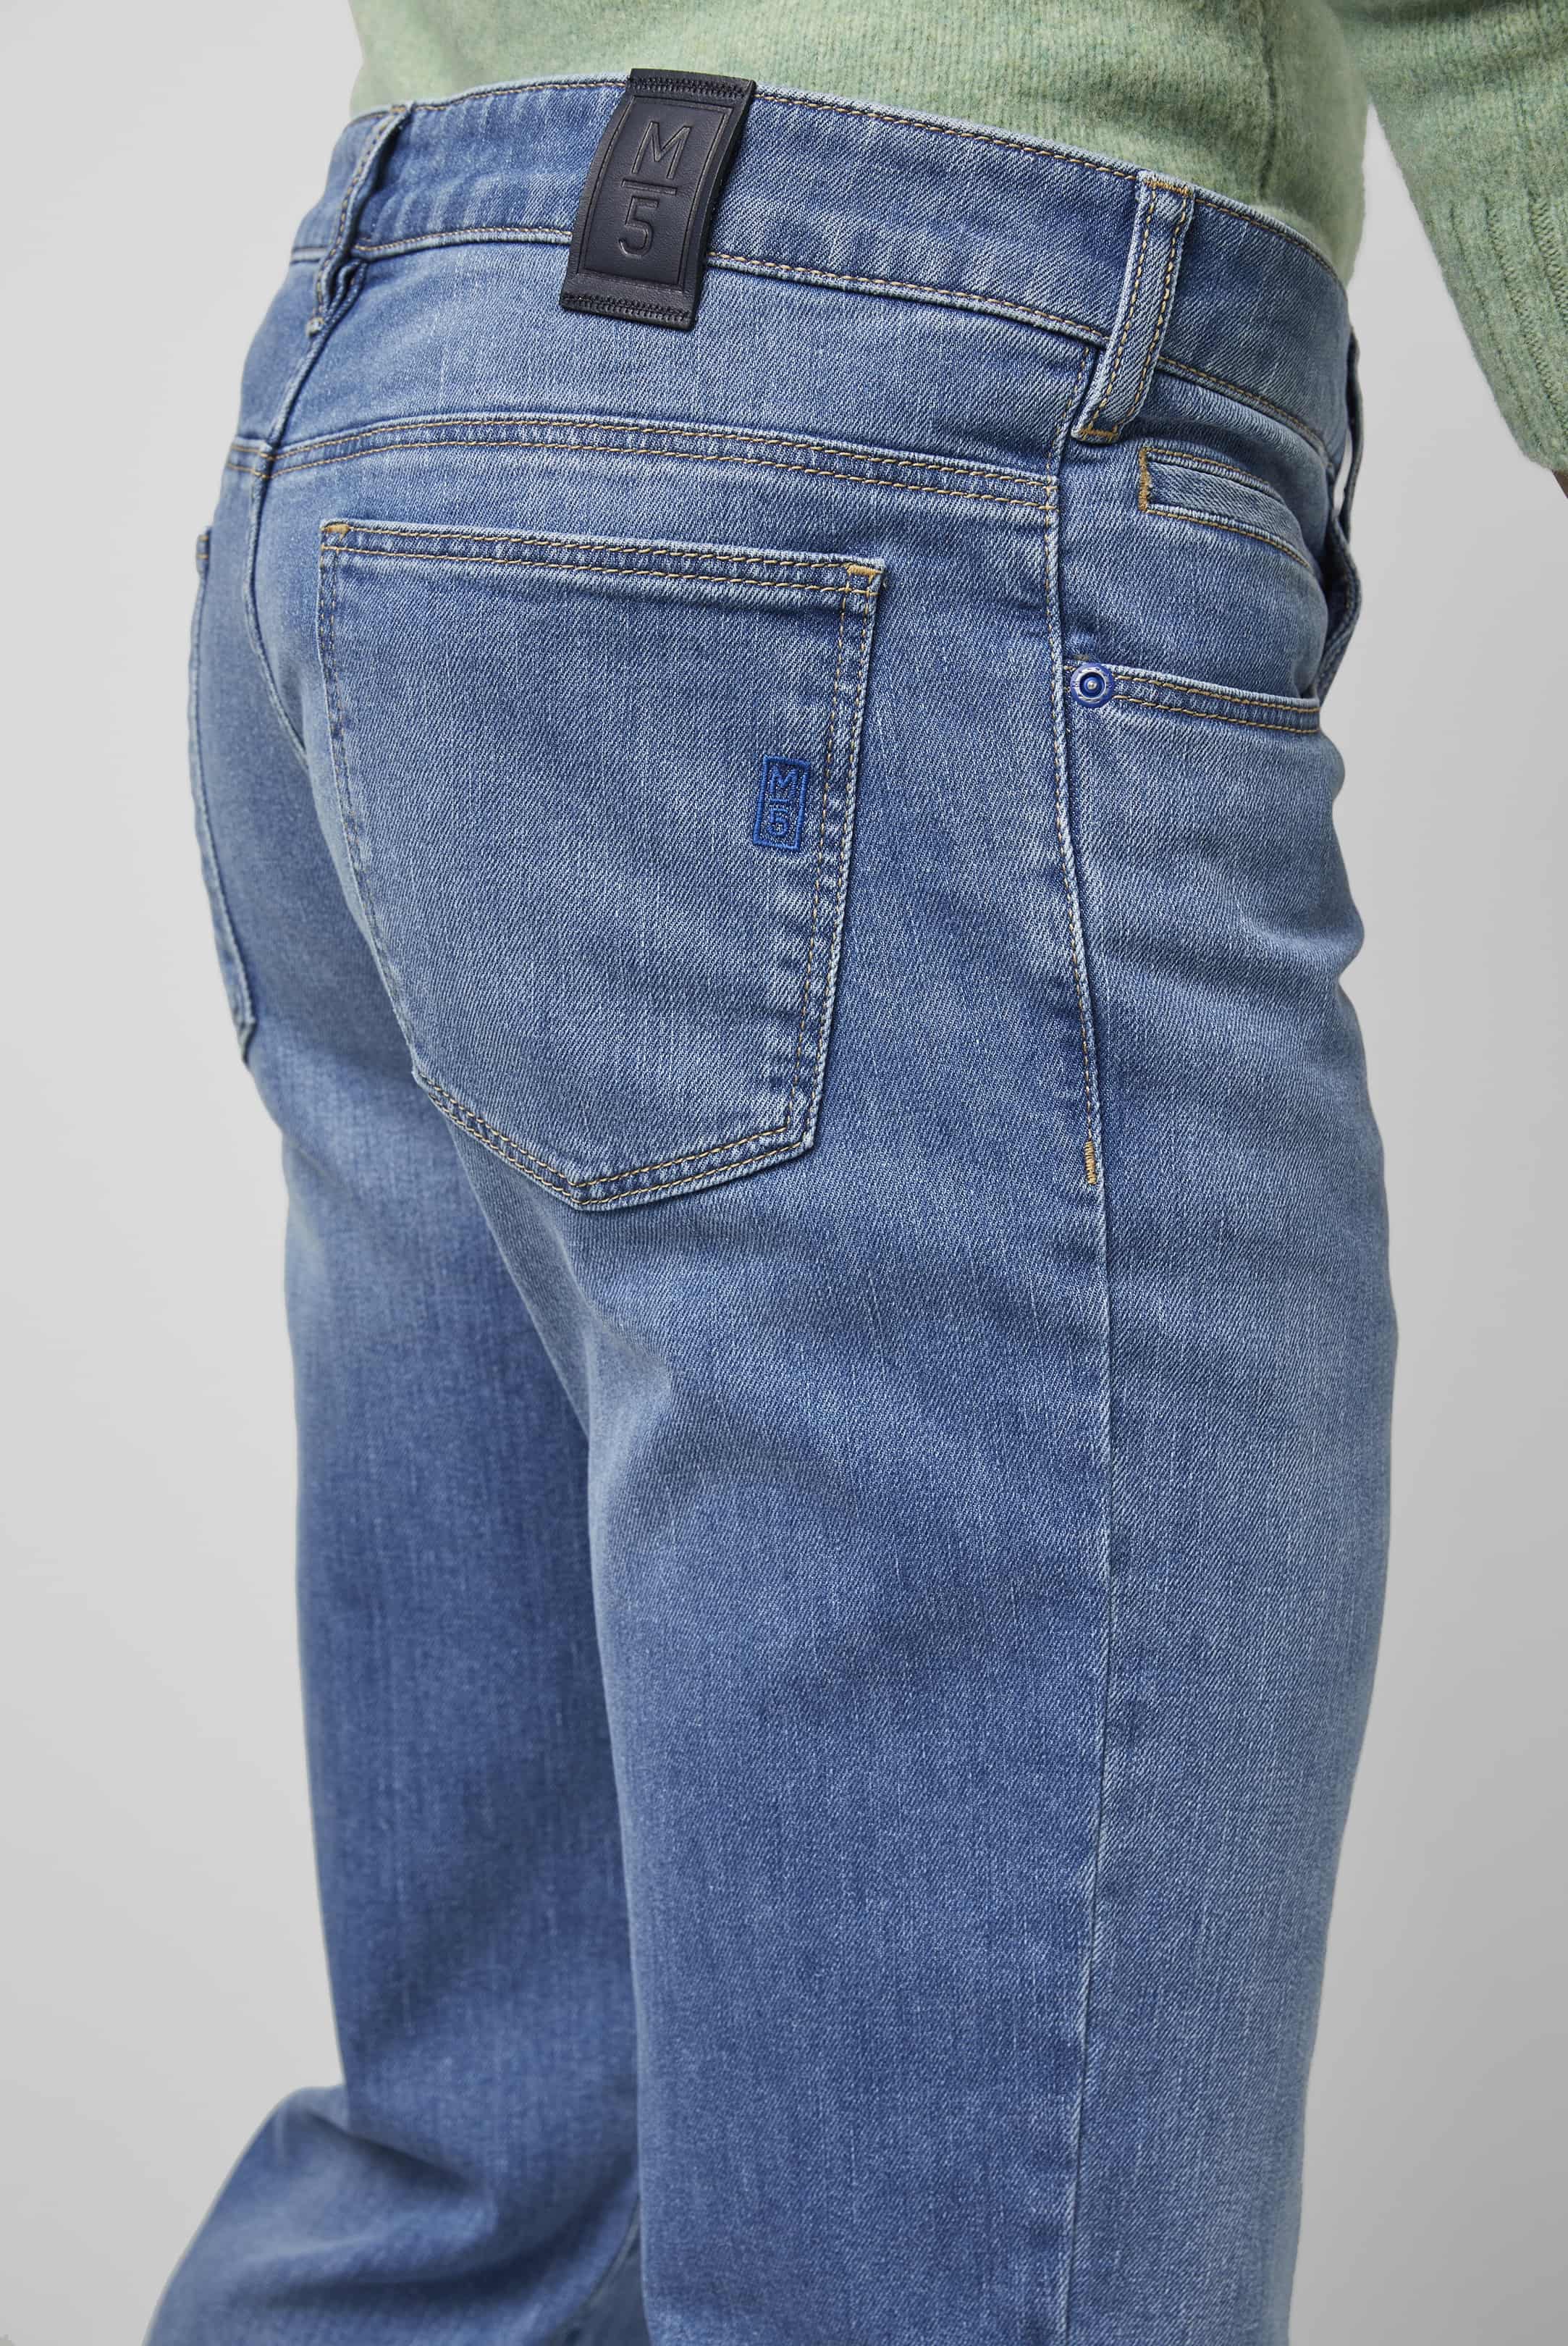 MEYER M5 Jeans - 6209 Regular Fit - Fairtrade Stretch Denim - Light Blue